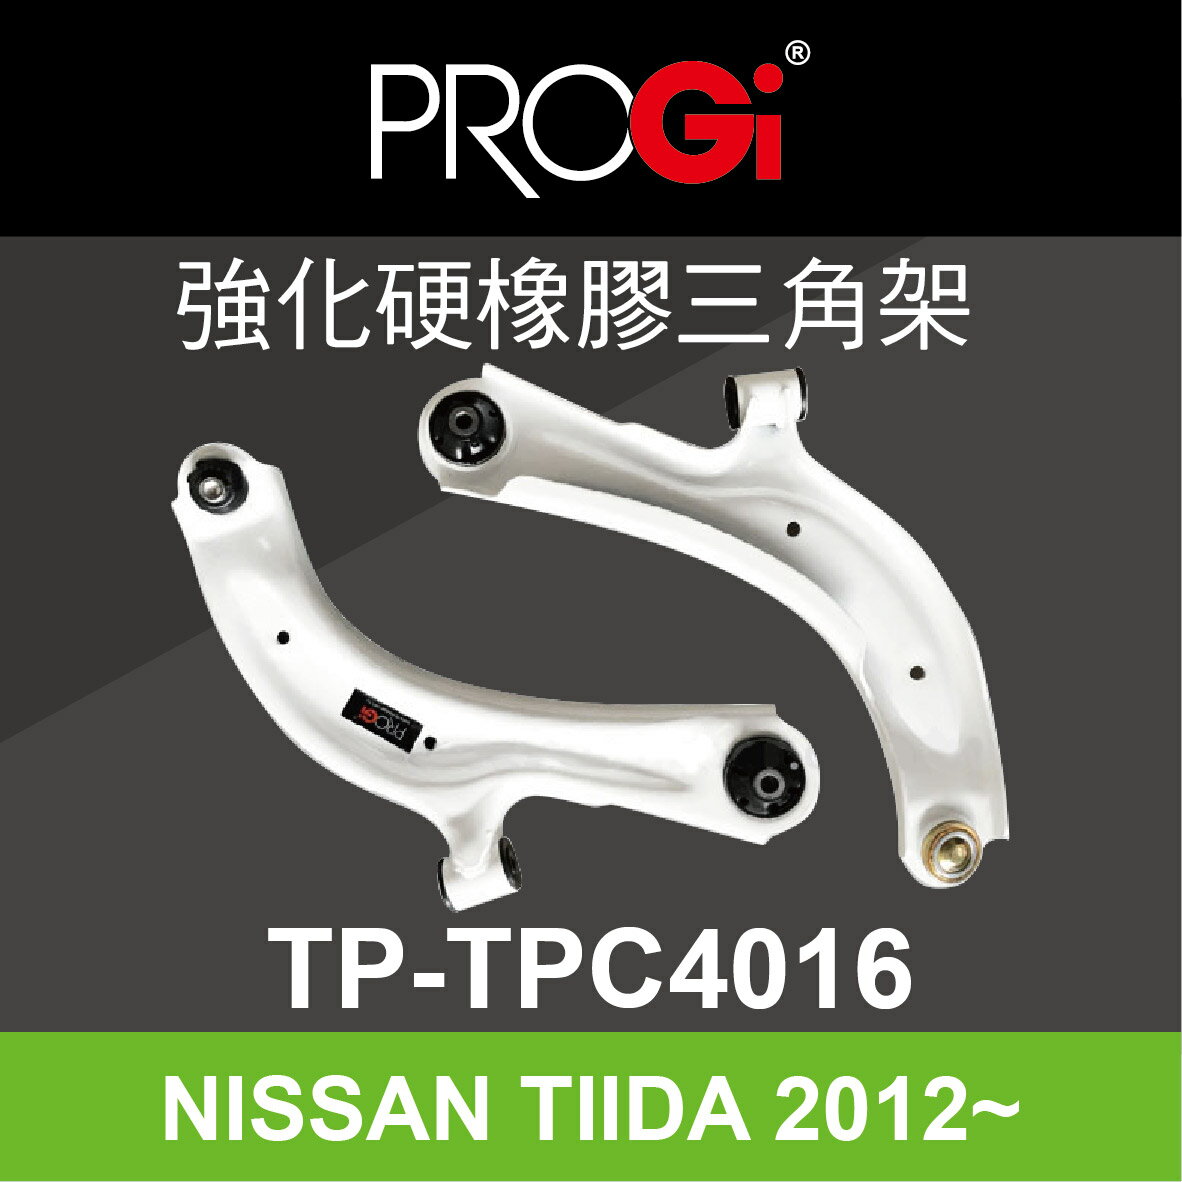 真便宜 [預購]PROGi TP-TPC4016 強化硬橡膠三角架(NISSAN TIIDA 2012~)